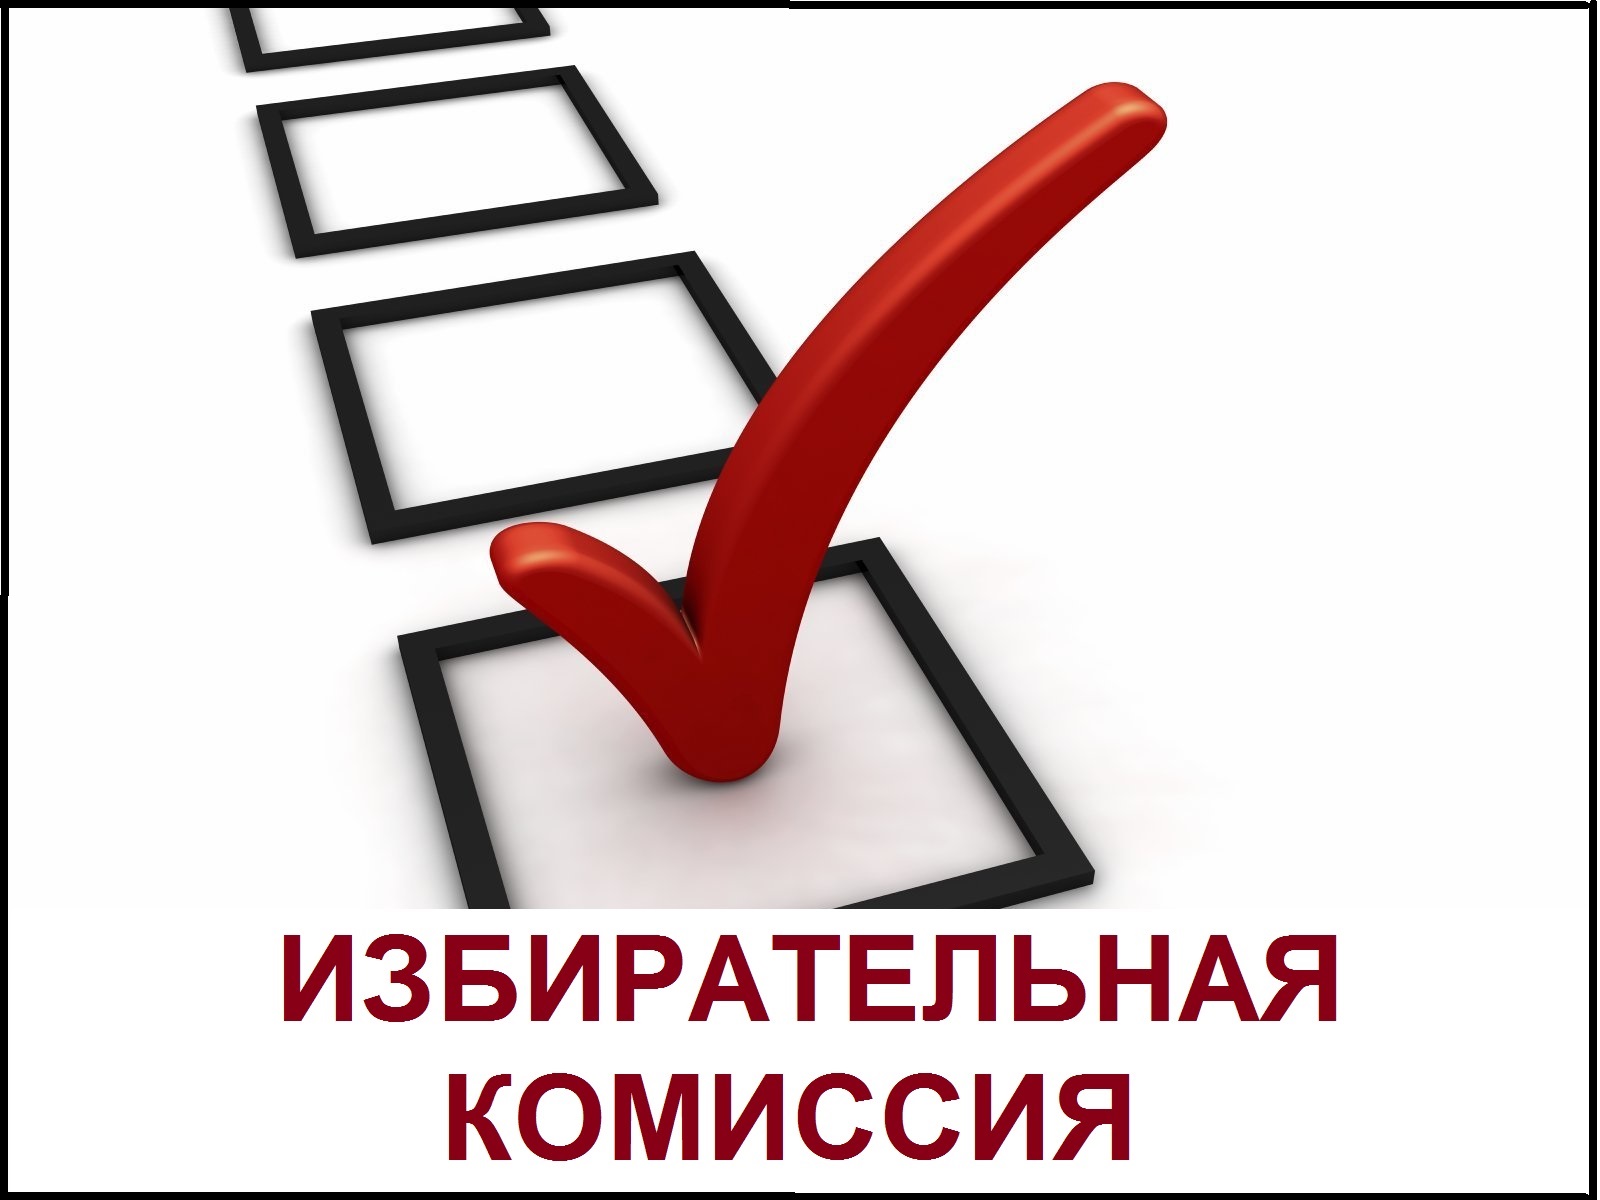 vybory-prezidenta-rossii-v-2018-godu-mogut-perenesti_1 (1)